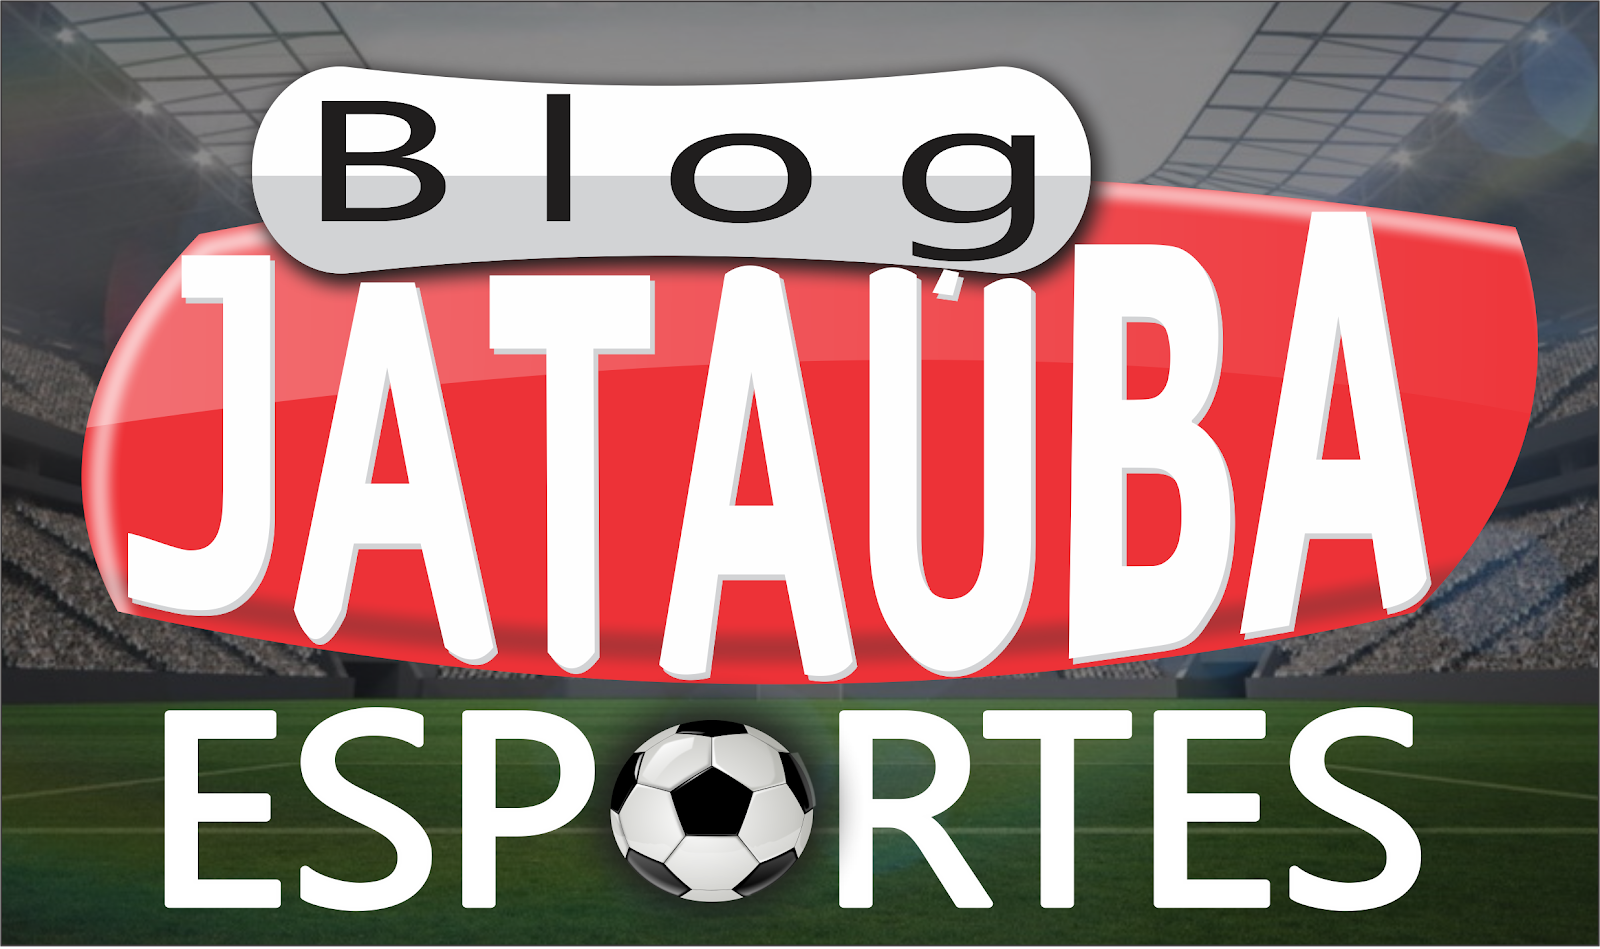 Jataúba Esportes